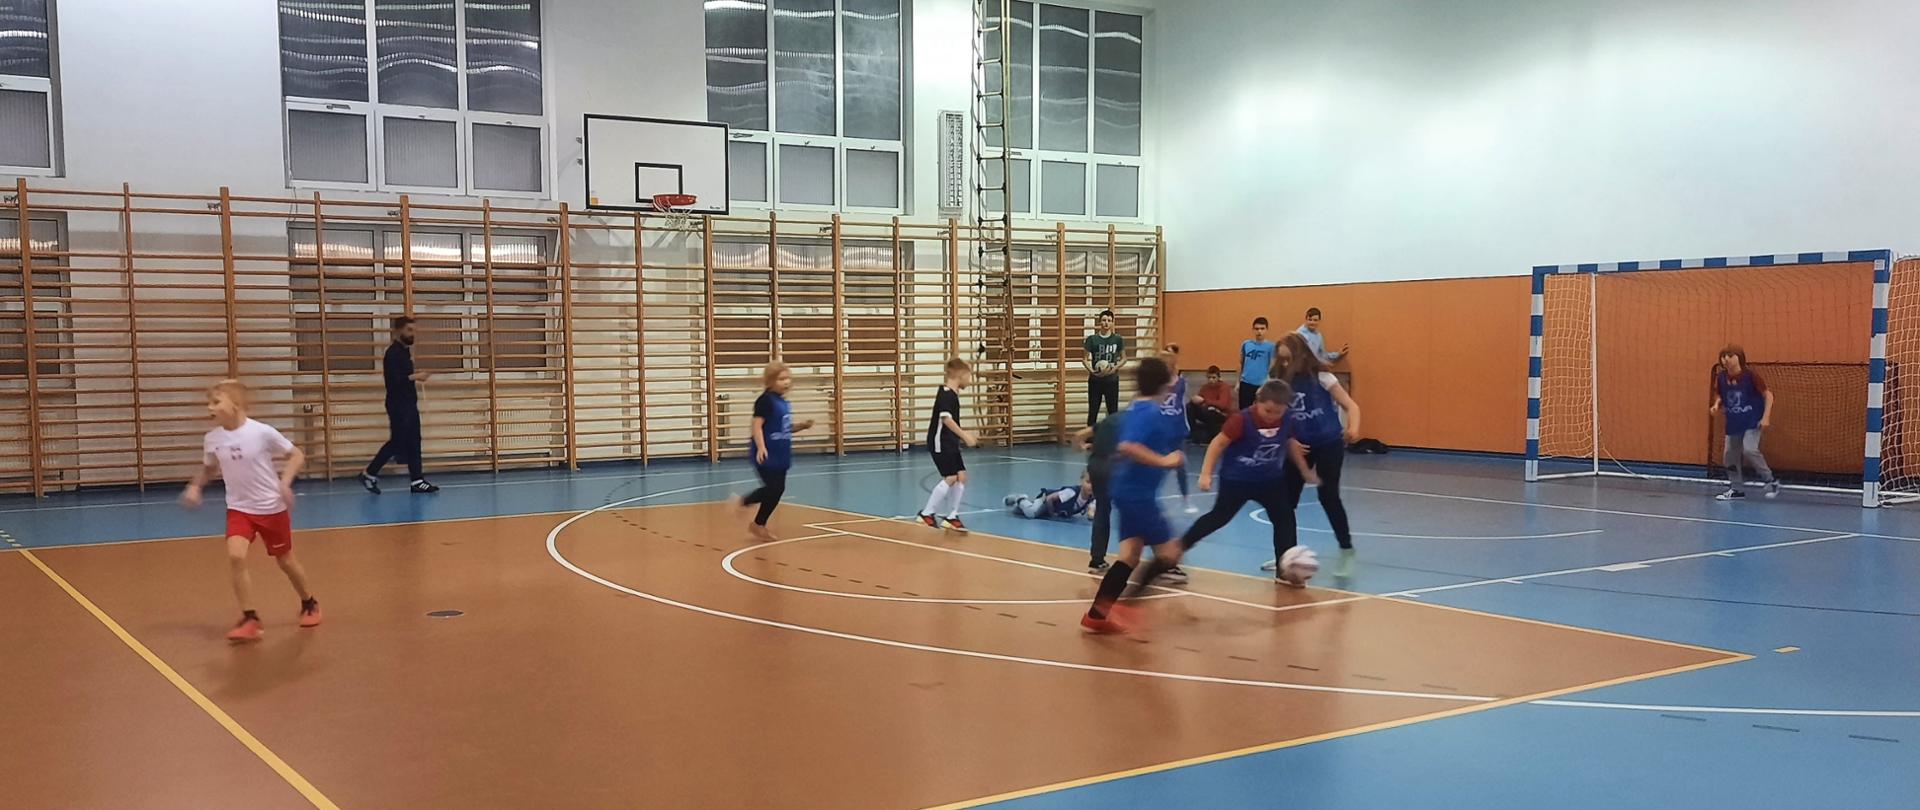 Zdjęcie przedstawia grupkę dzieci grających w piłkę nożną na hali sportowej.